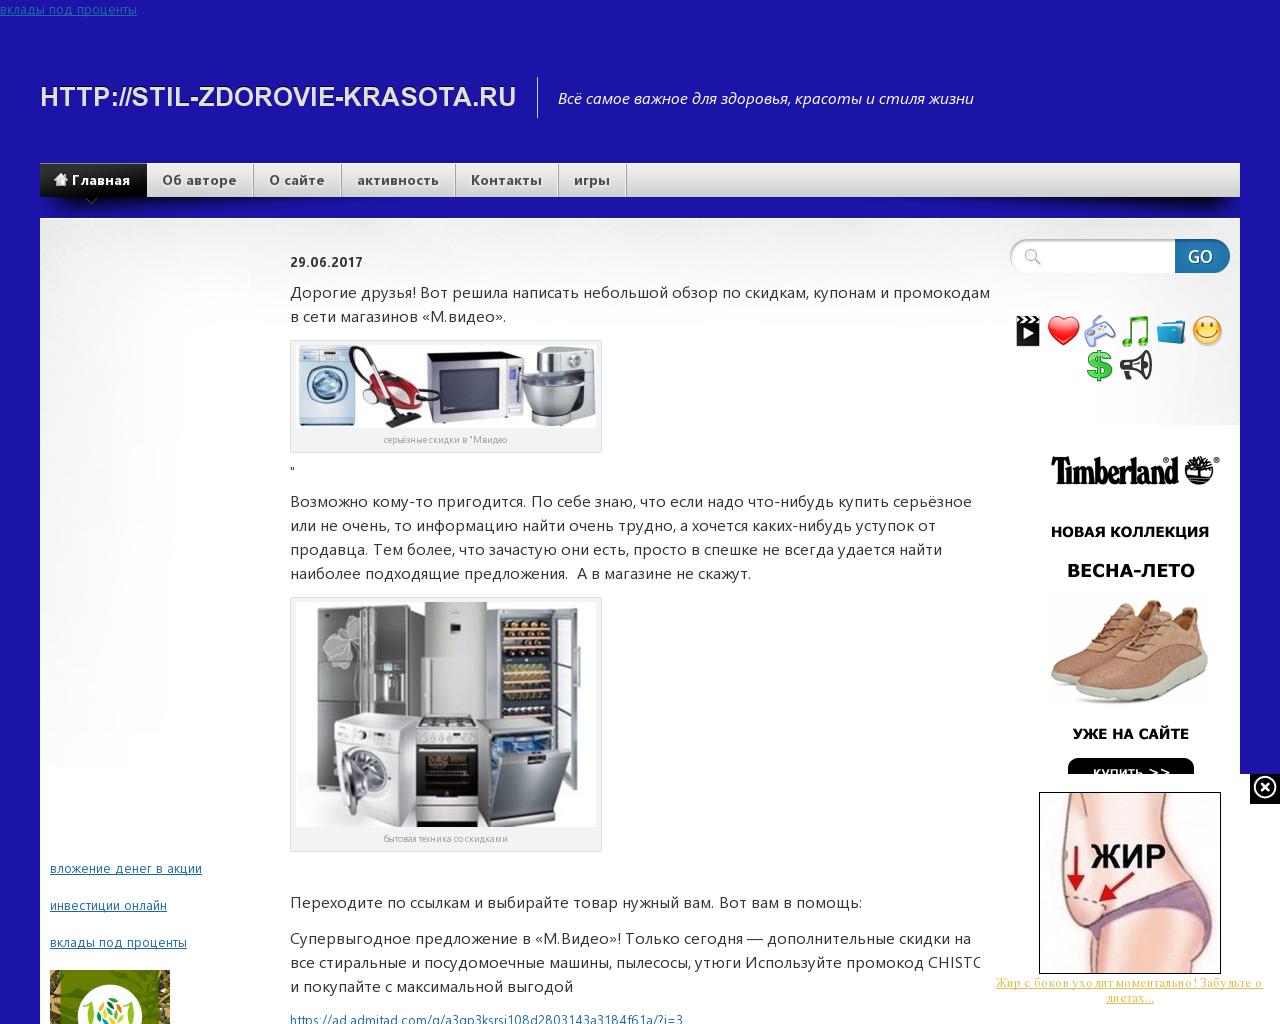 Изображение сайта stil-zdorovie-krasota.ru в разрешении 1280x1024